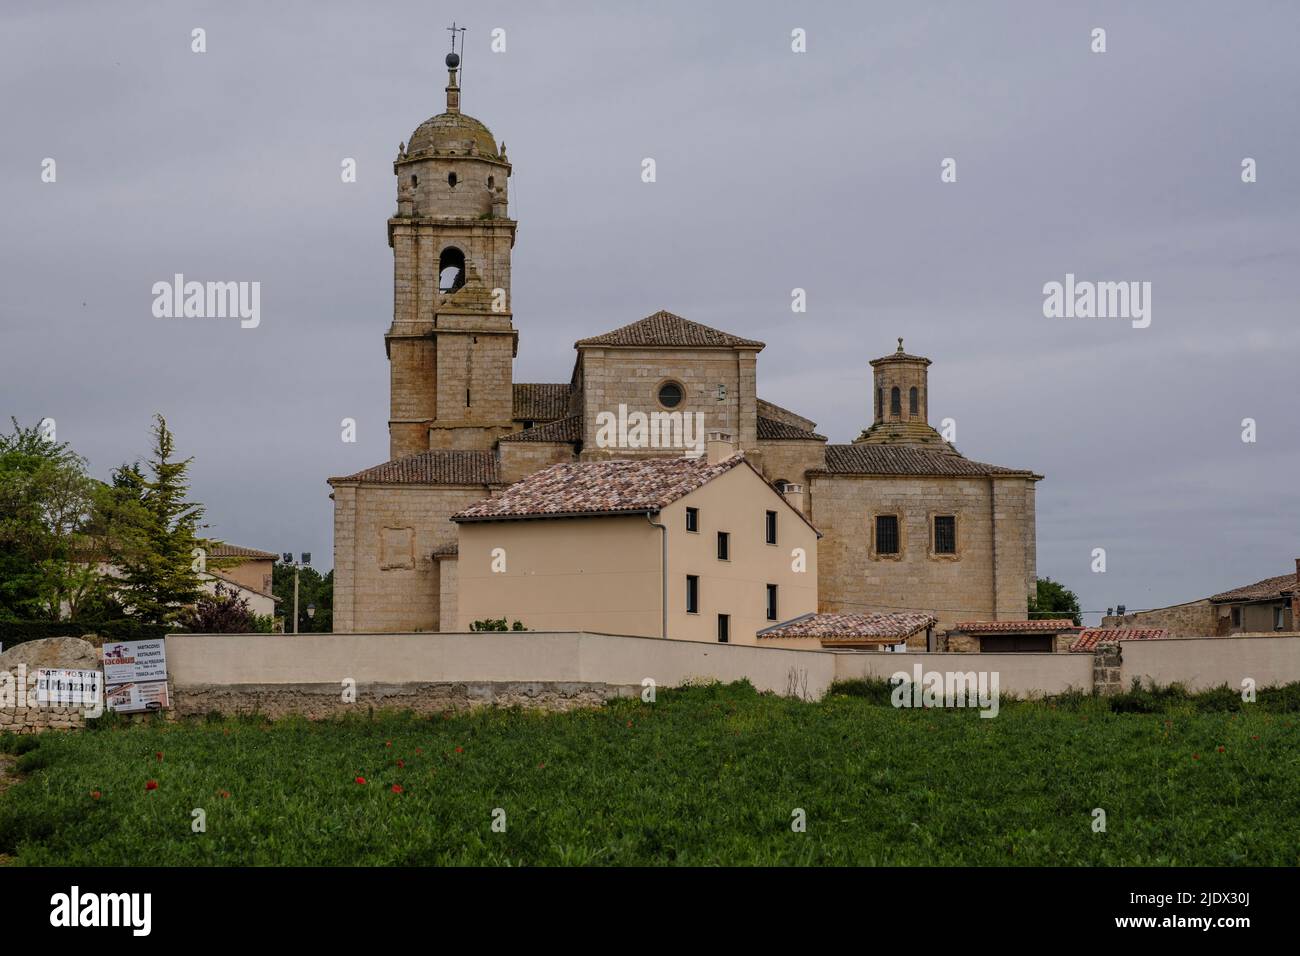 España, Castrojeriz. Iglesia de Santa María del Manzano. Foto de stock